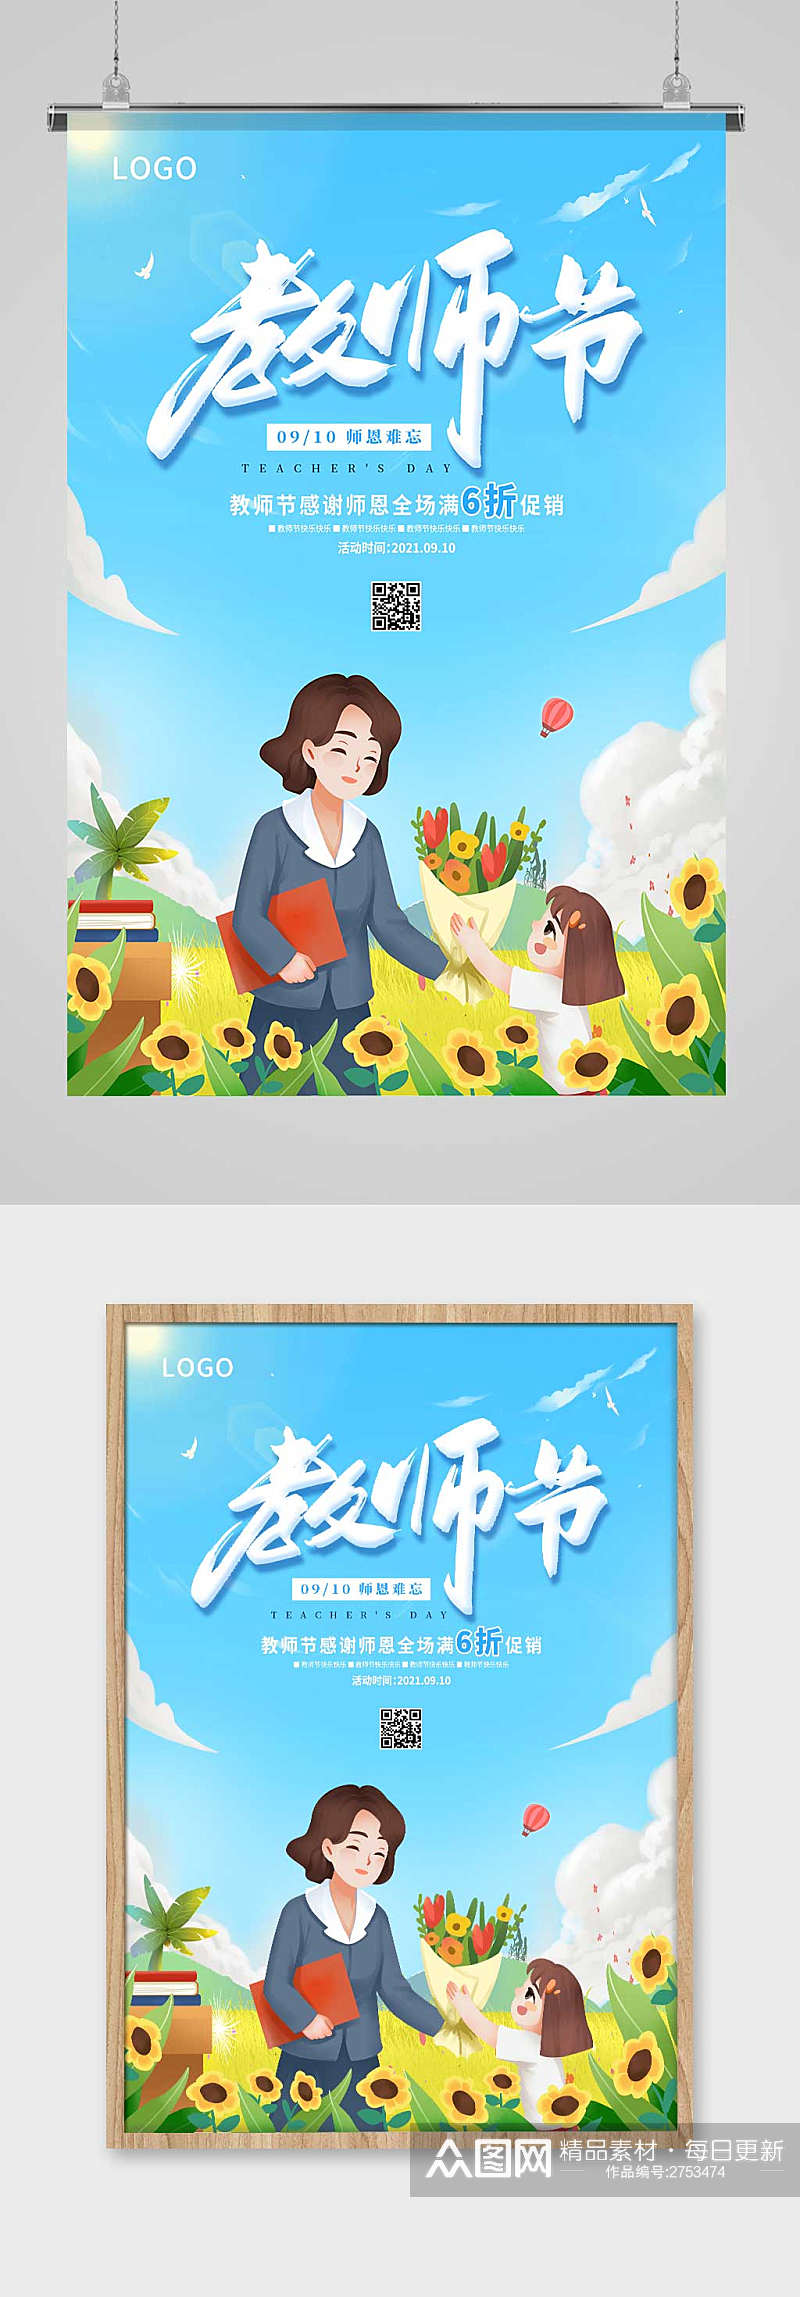 蓝色卡通教师节教师节快乐教师节促销海报素材